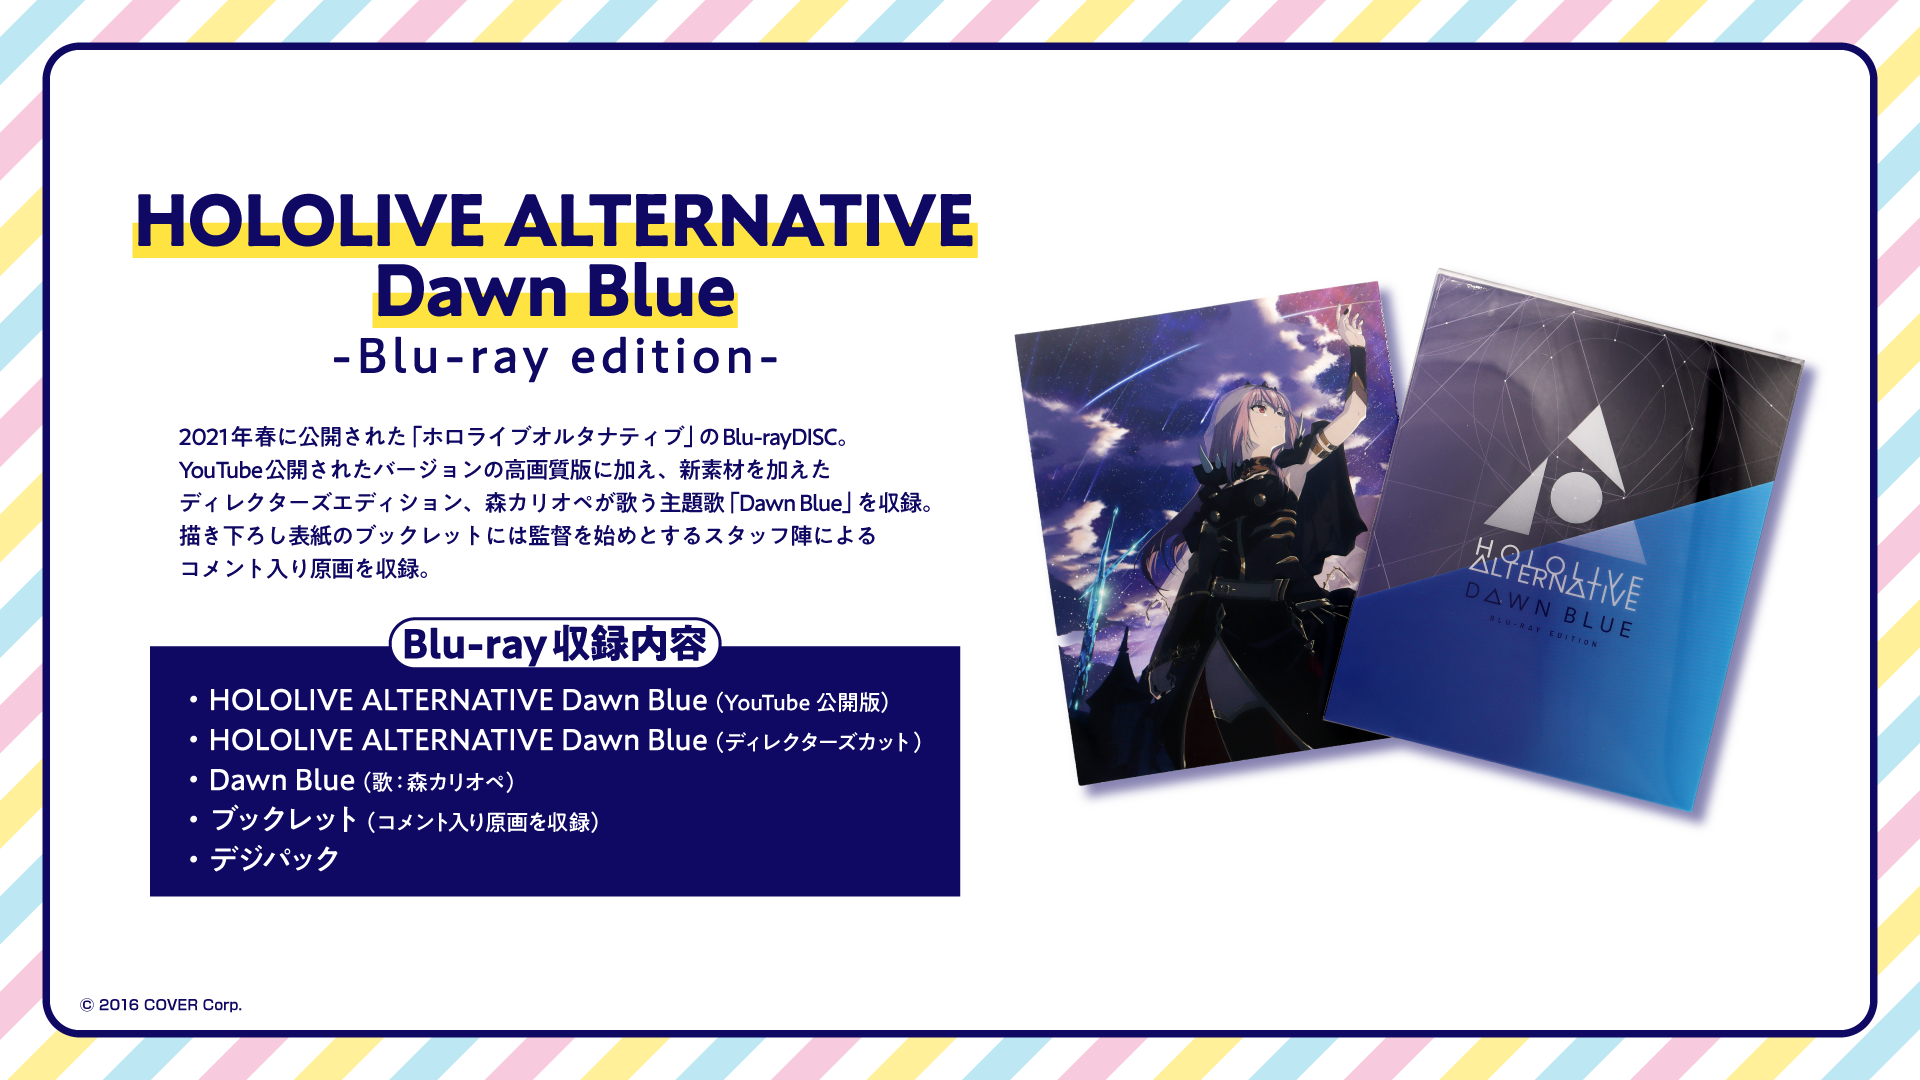 ALTERNATIVE Dawn Blue Blu-ray edition